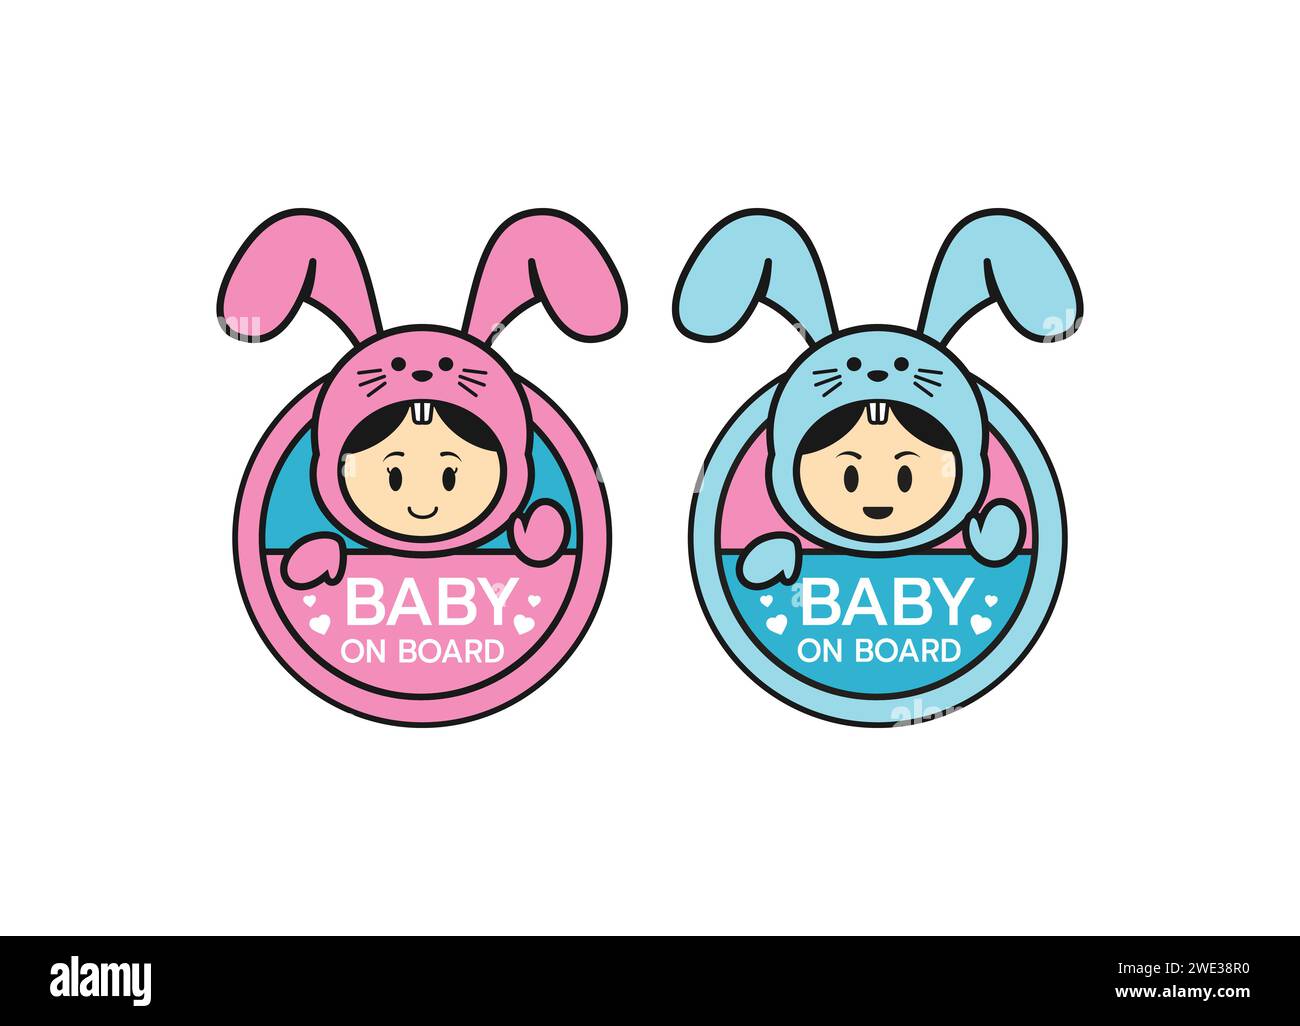 Logo-Symbol für das Baby-an-Bord-Schild. Warnemblem für Kindersicherheitsaufkleber. Niedliche Baby-Sicherheitsdesign-Illustration, lustiger kleiner lächelnder Junge und Mädchen, der Häschen trägt Stock Vektor